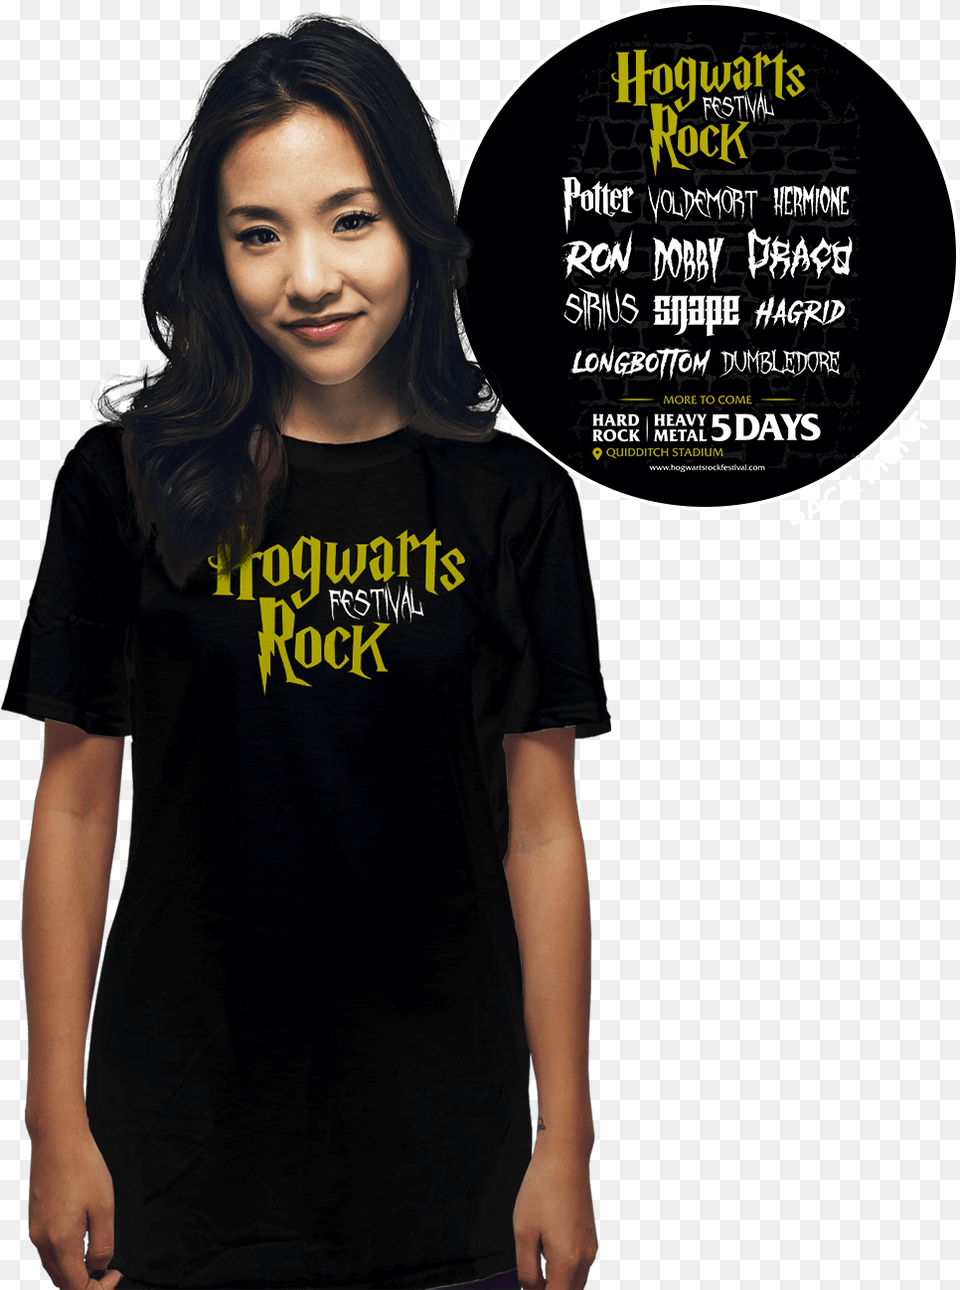 Hogwarts Rock Festival Teach Muggles Teacher Shirt Harry Potter Shirt Teacher, Clothing, T-shirt, Adult, Female Free Png